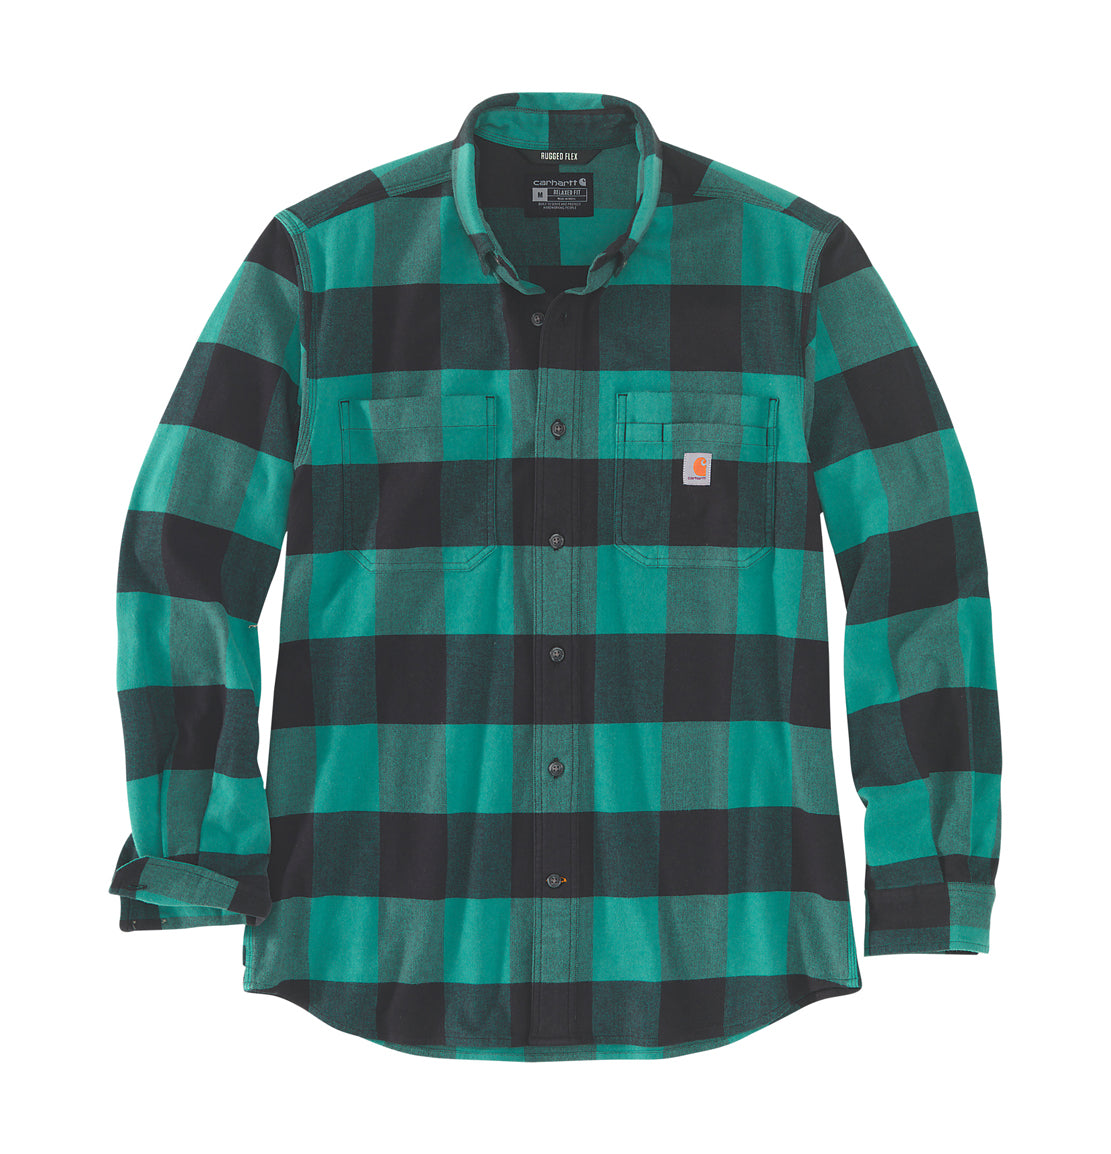 Carhartt flannel shirt green